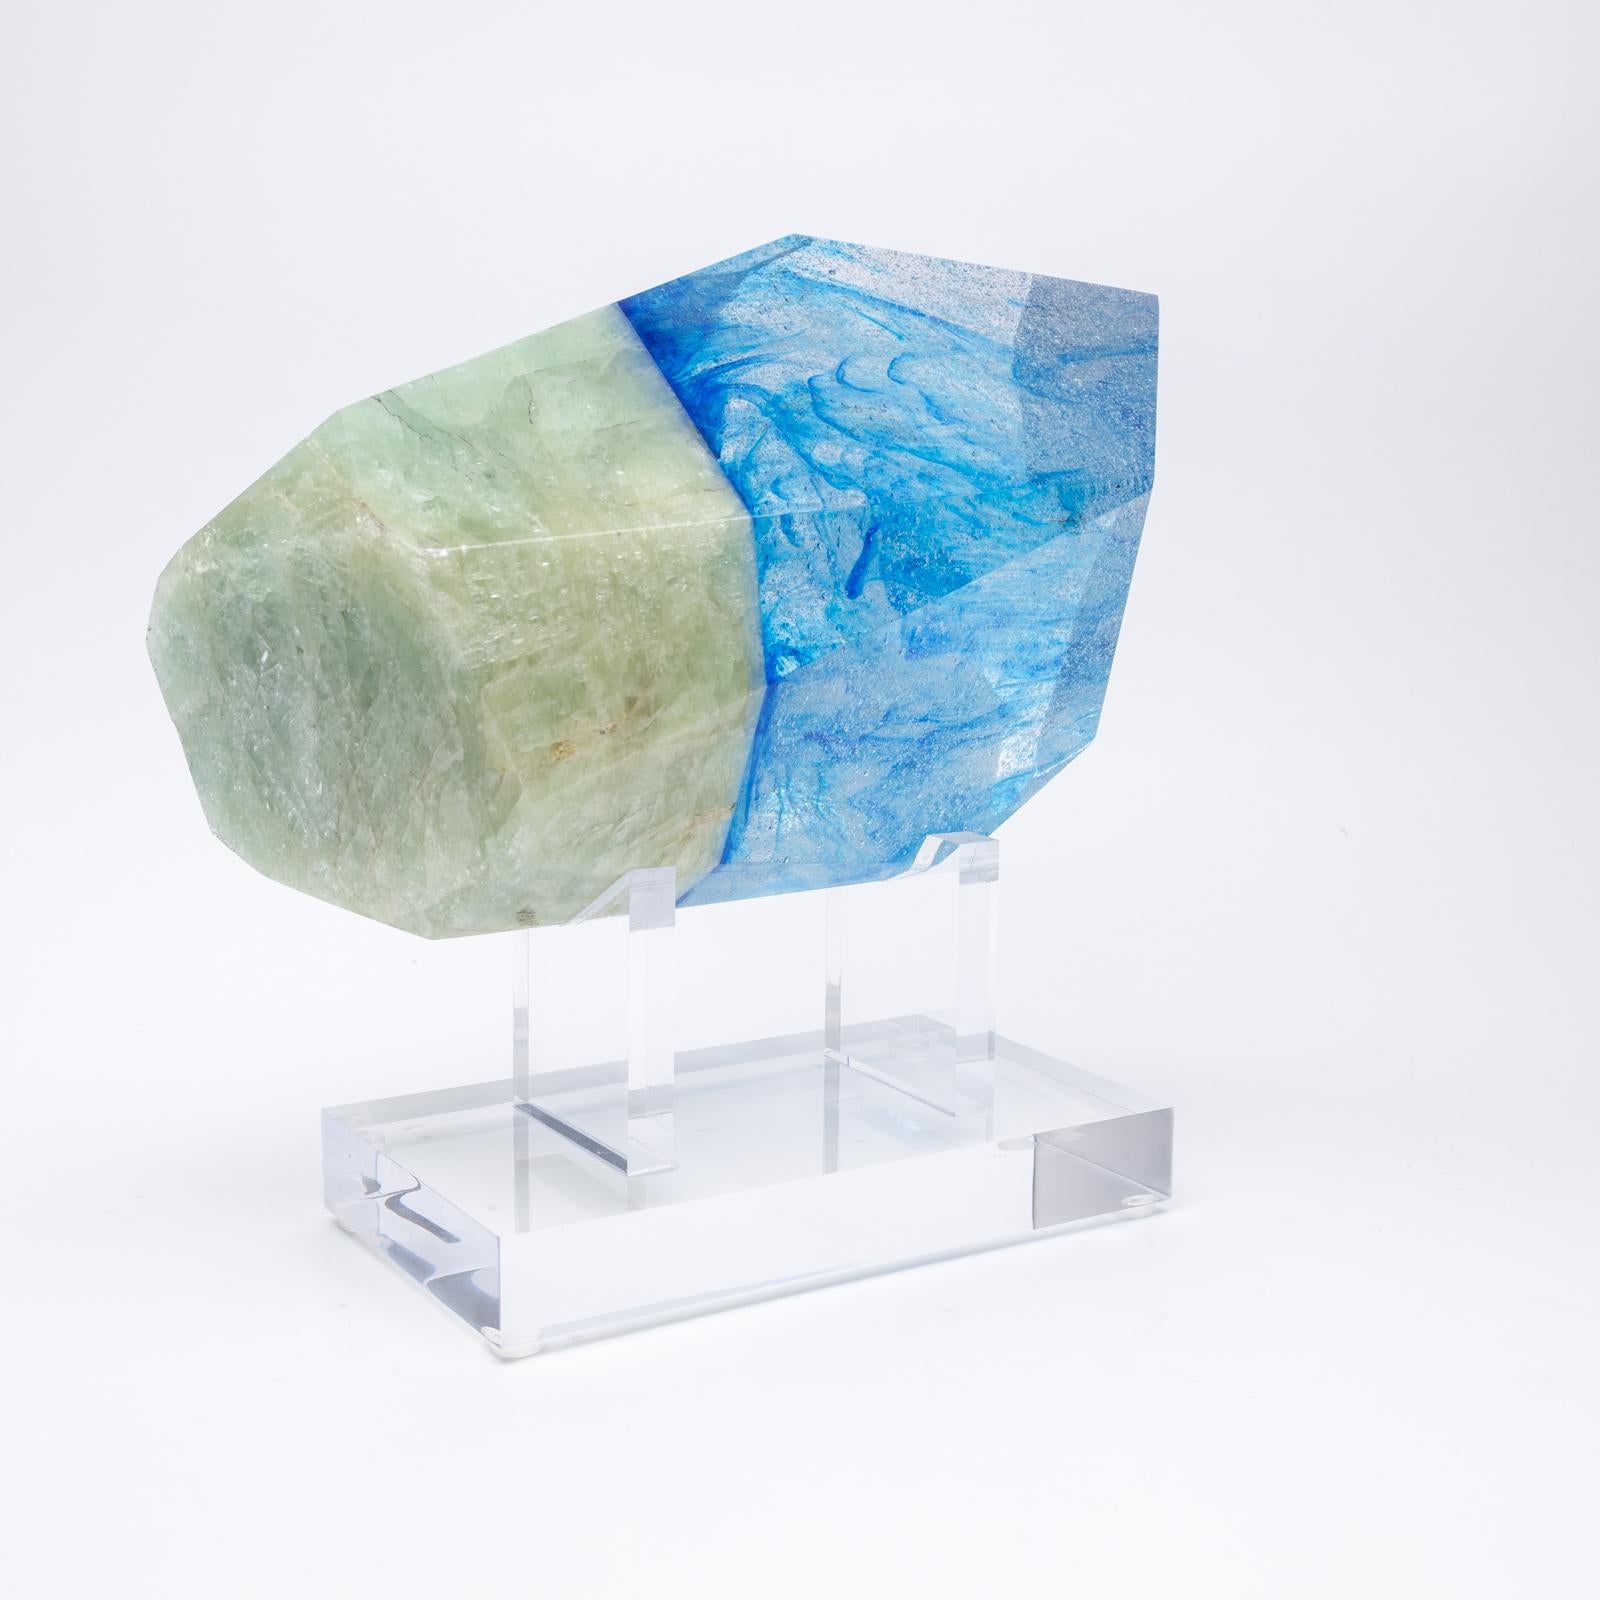 Gepaart, brasilianischer Aquamarin und Glasskulptur aus der Kollektion TYME, eine Zusammenarbeit von Orfeo Quagliata und Ernesto Durán

TYME-Kollektion 
Ein Tanz zwischen Reinheit und Detail bringt einzigartige Stücke hervor, die die Edelsteine